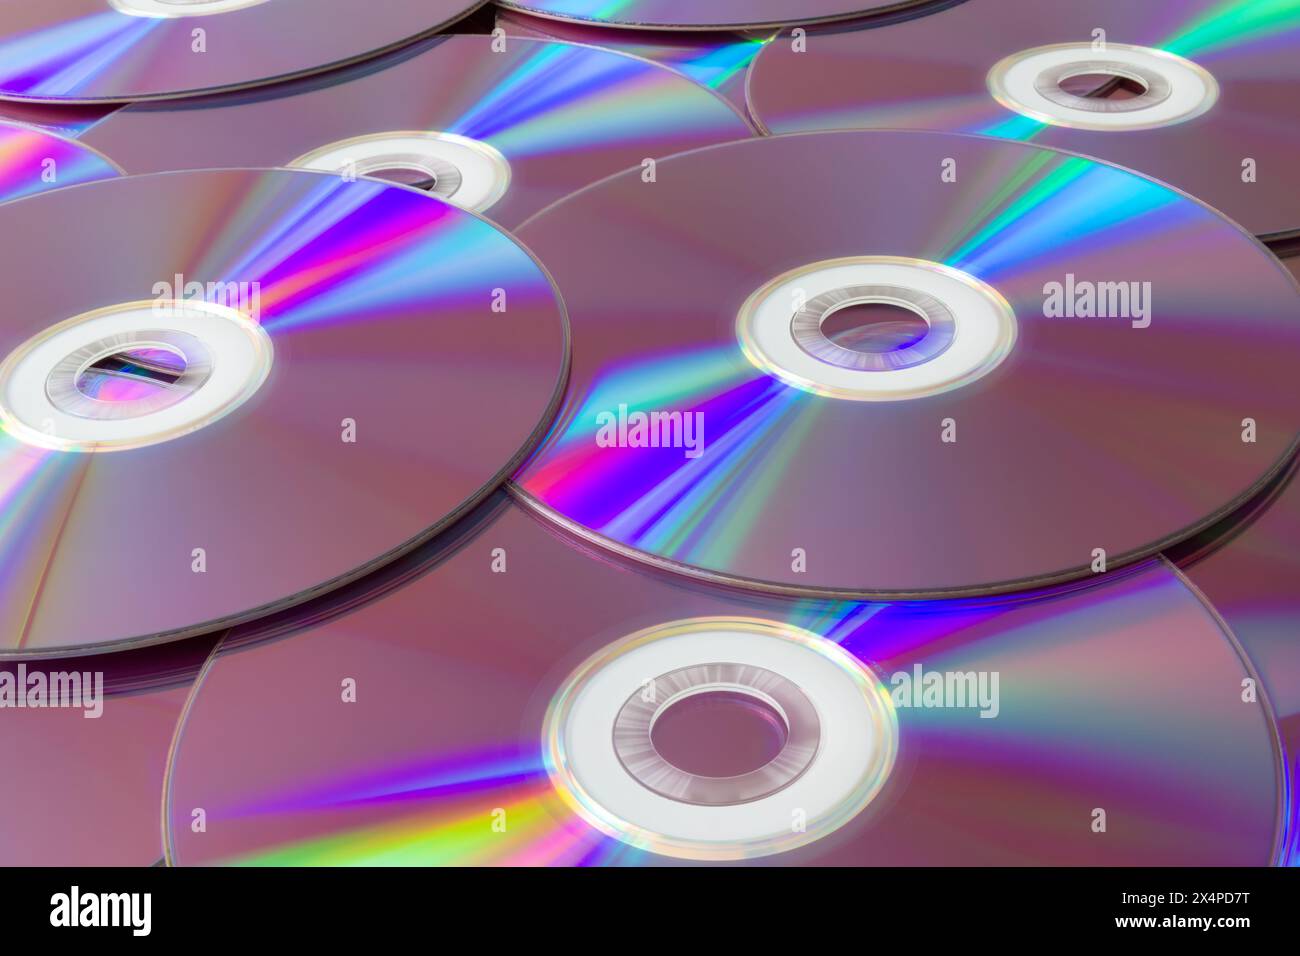 Riflessi arcobaleno su una collezione di compact disc. Una vivace pila di cd con riflessi iridescenti che creano uno spettro di colori. Foto Stock